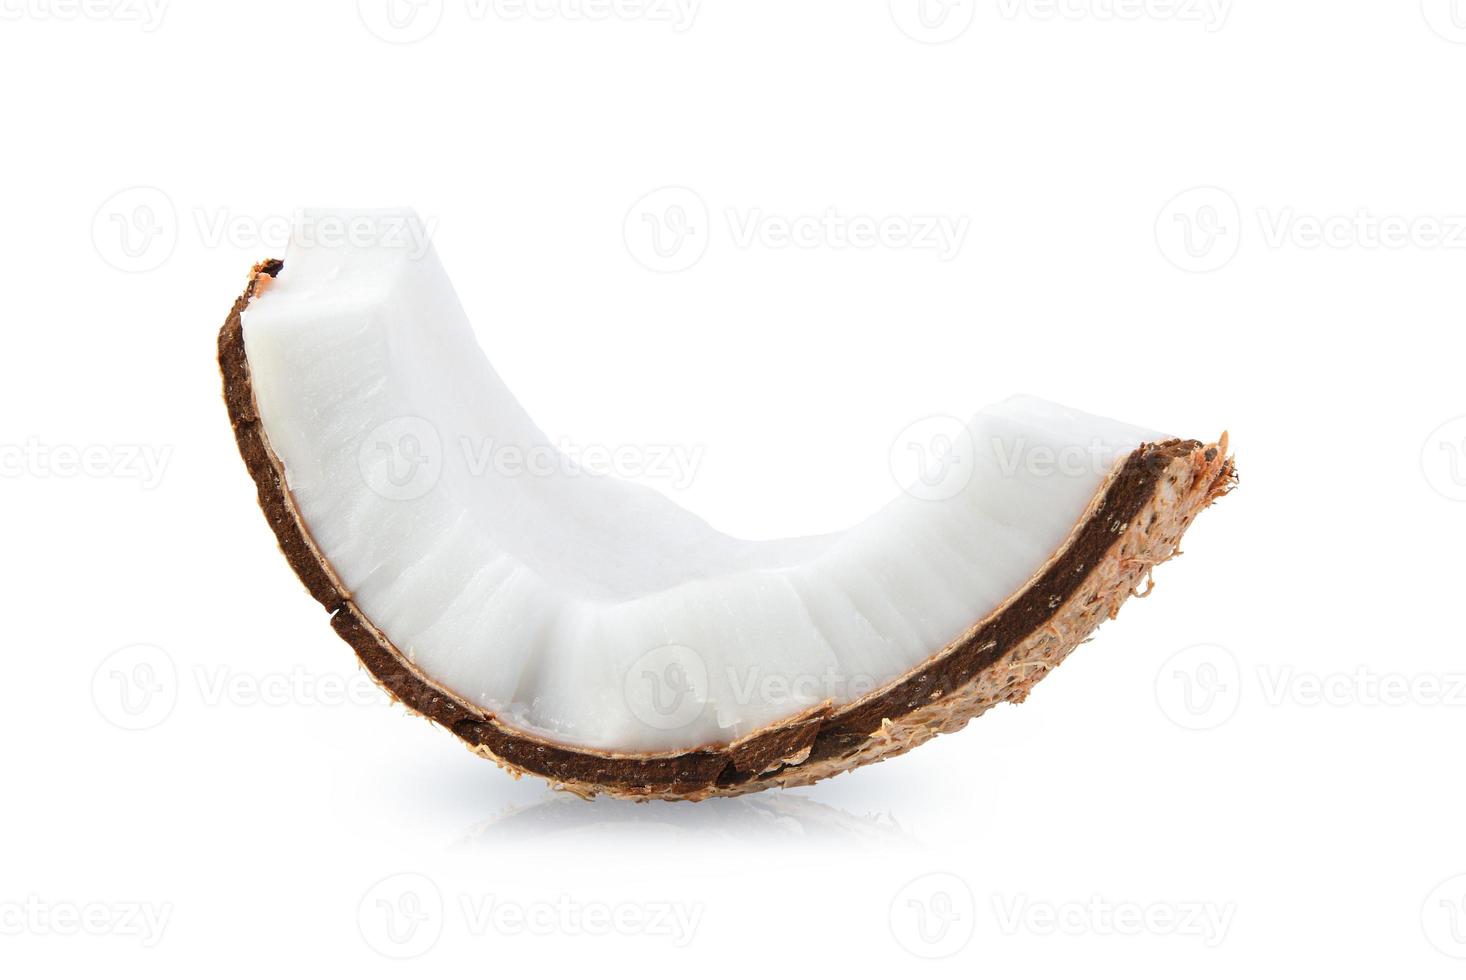 kokosbitar isolerad på en vit bakgrund. foto